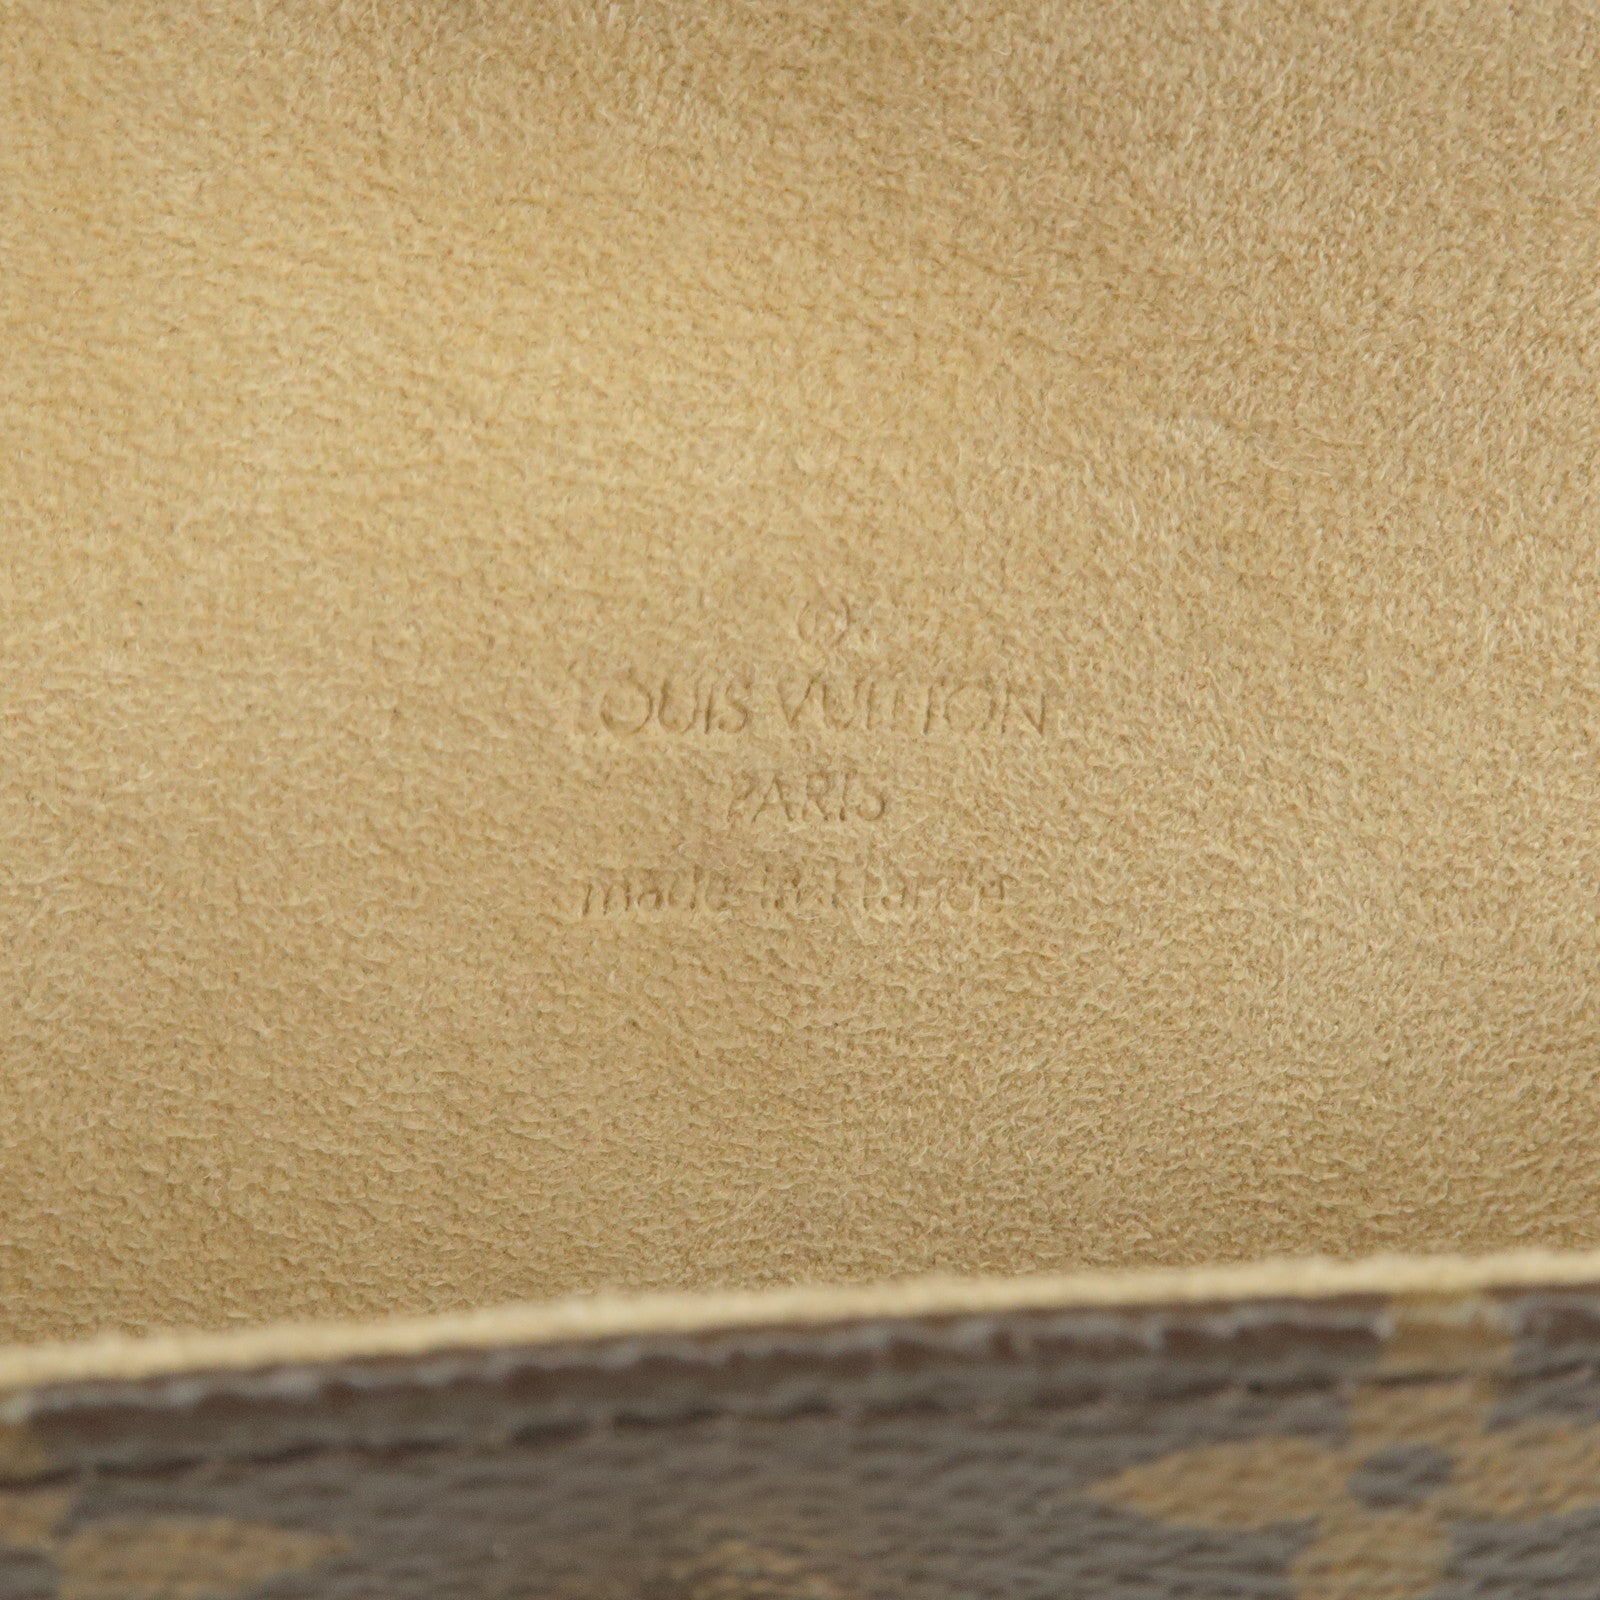 Louis Vuitton Monogram Pochette Florentine Waist Bag in Metallic